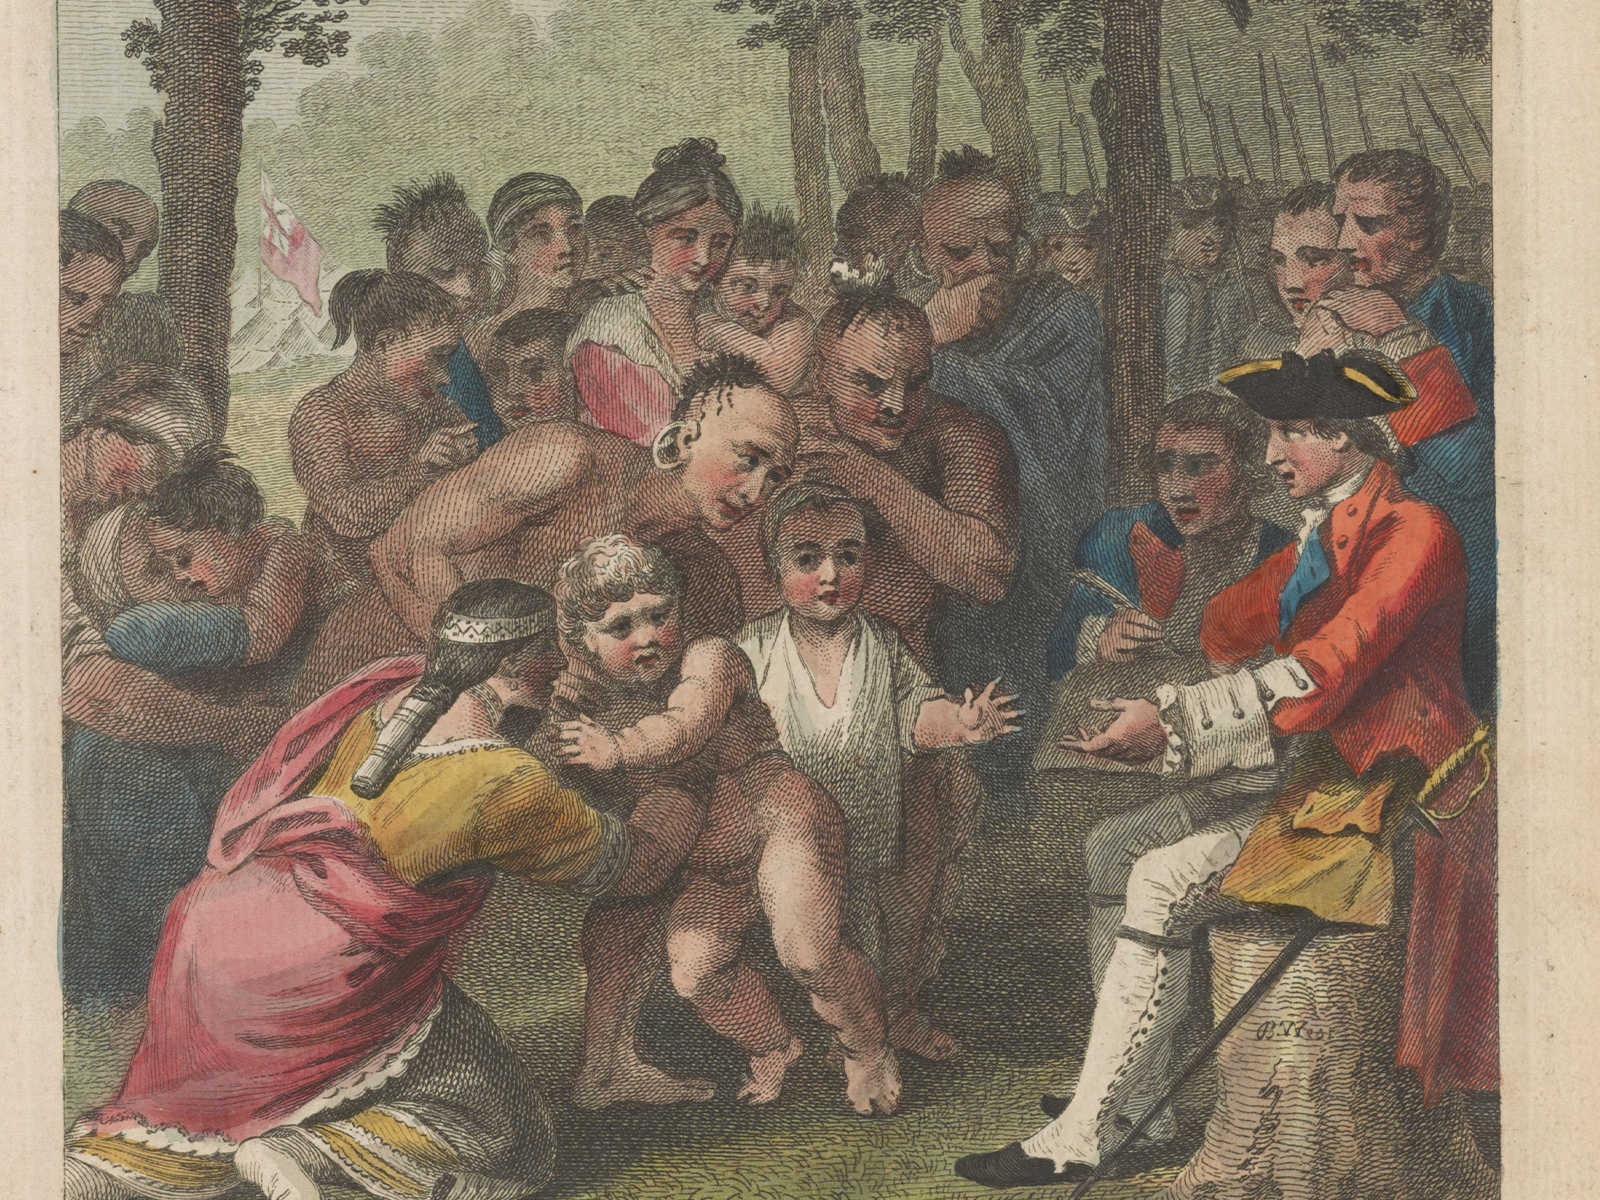 Bild der Auslieferung der gefangenen Briten